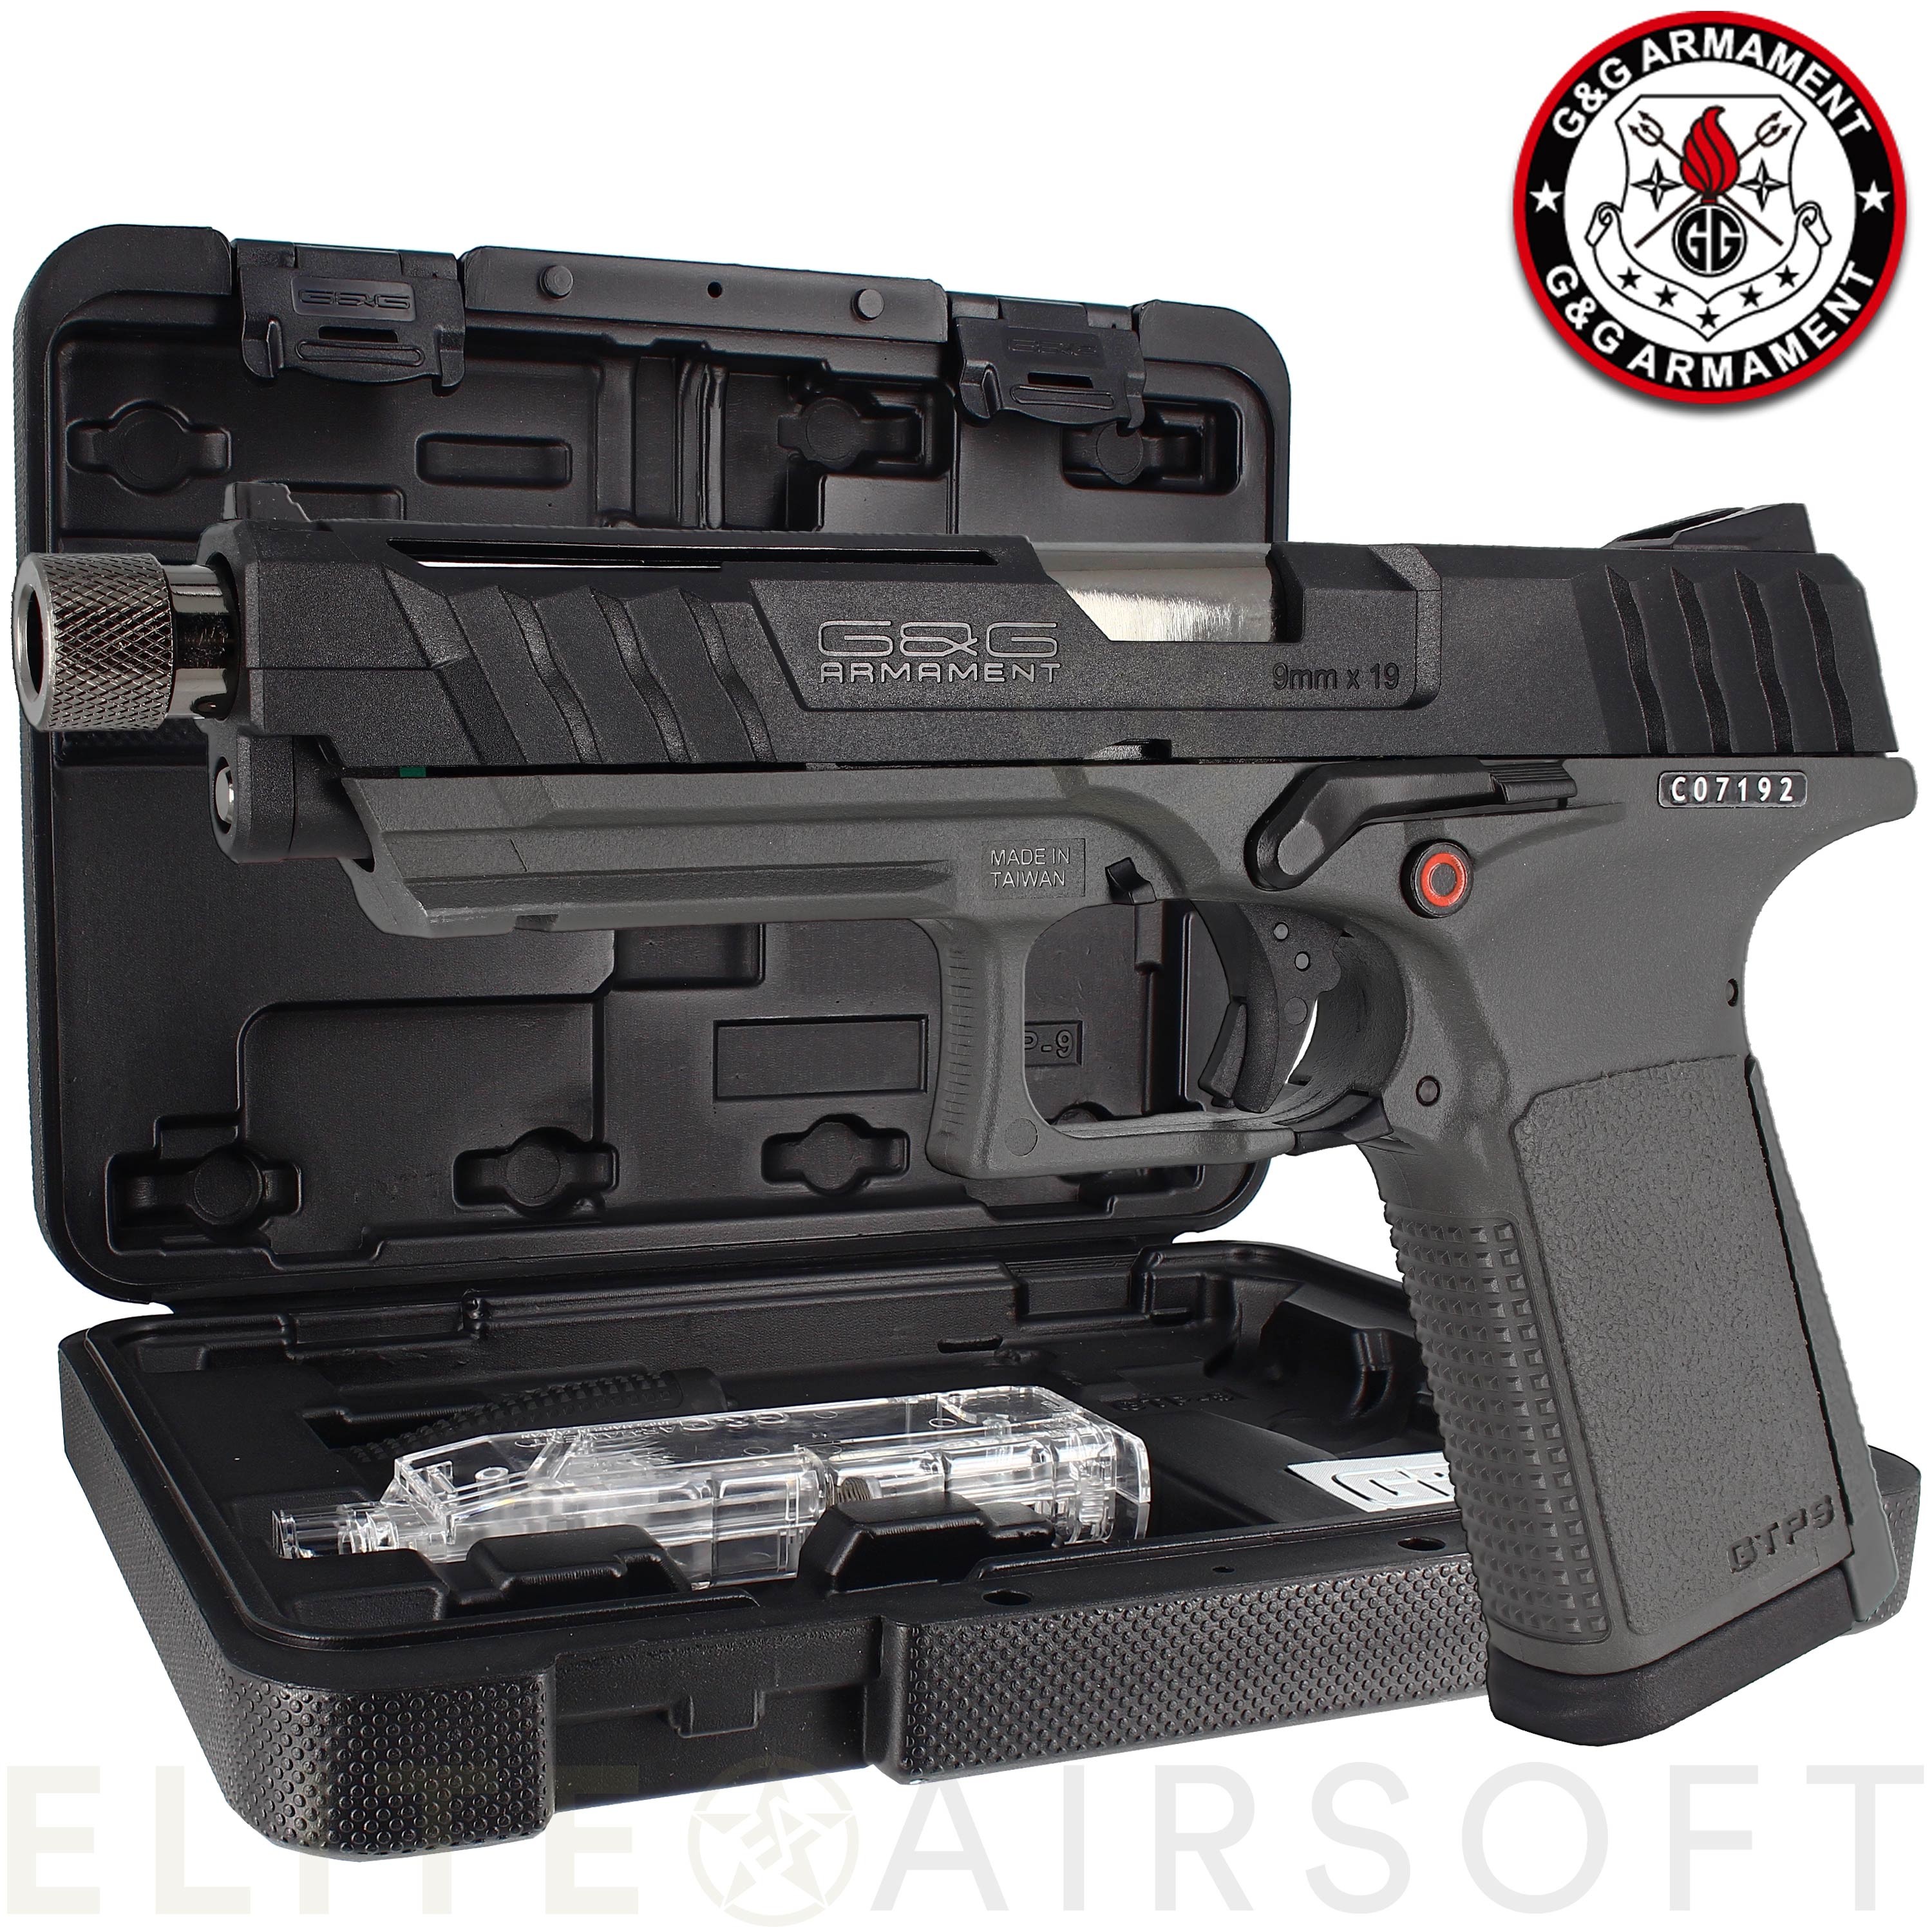 G&G - Pistolet GTP9 - GBB - Gaz - Noir/Gris (1 joules) - Elite Airsoft